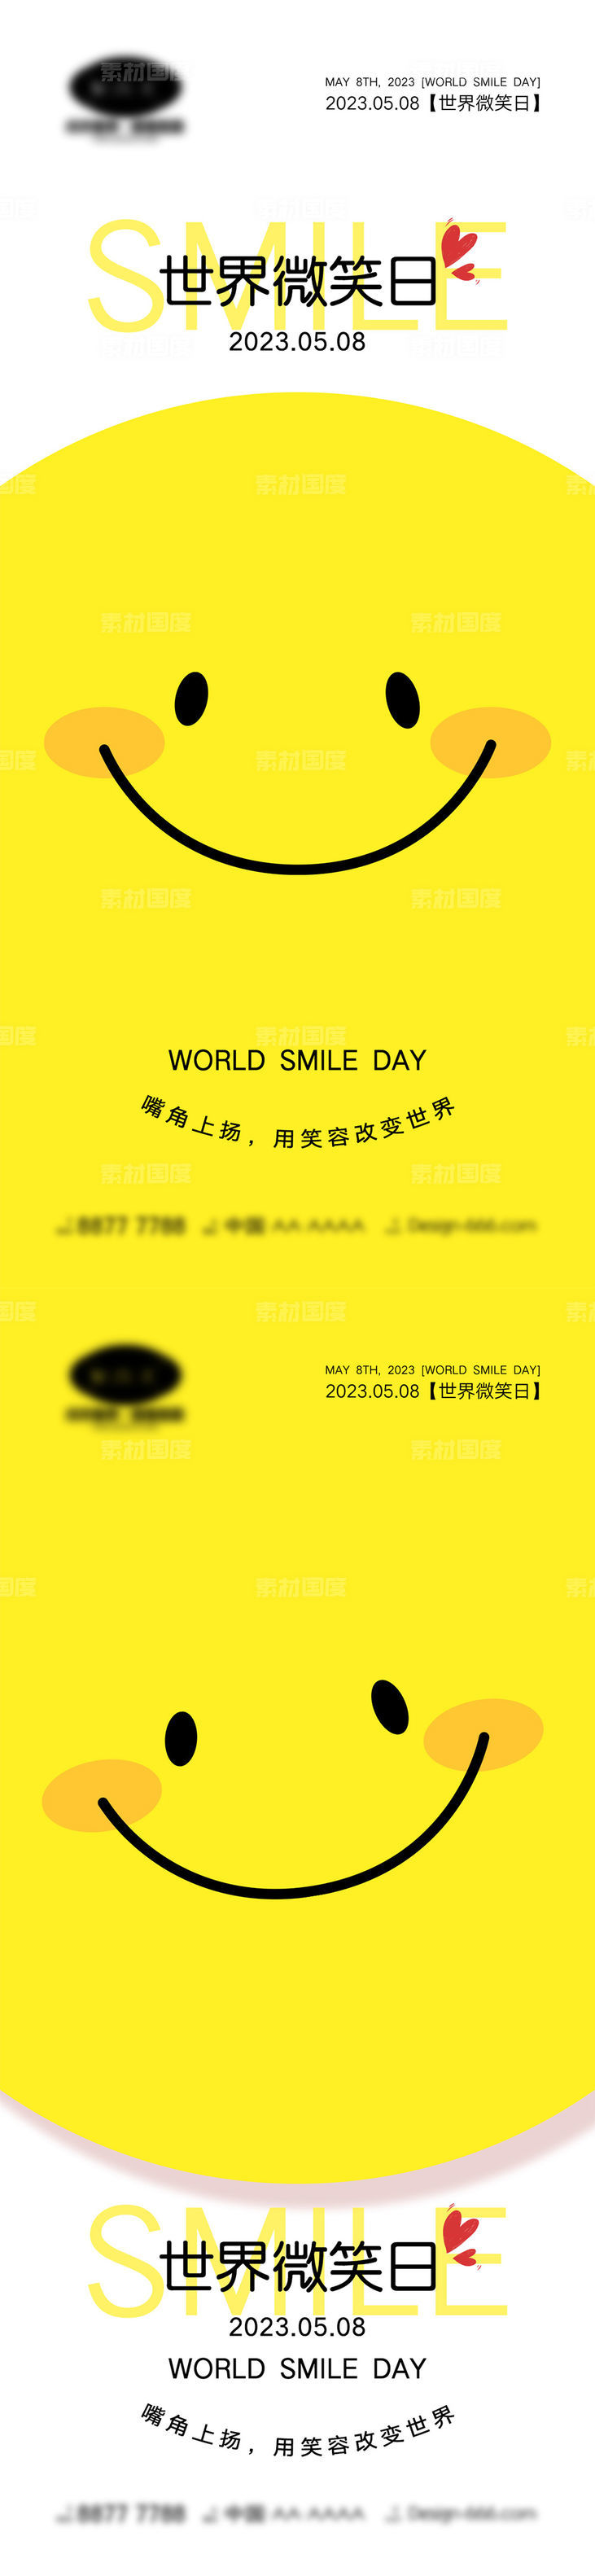 世界微笑日4